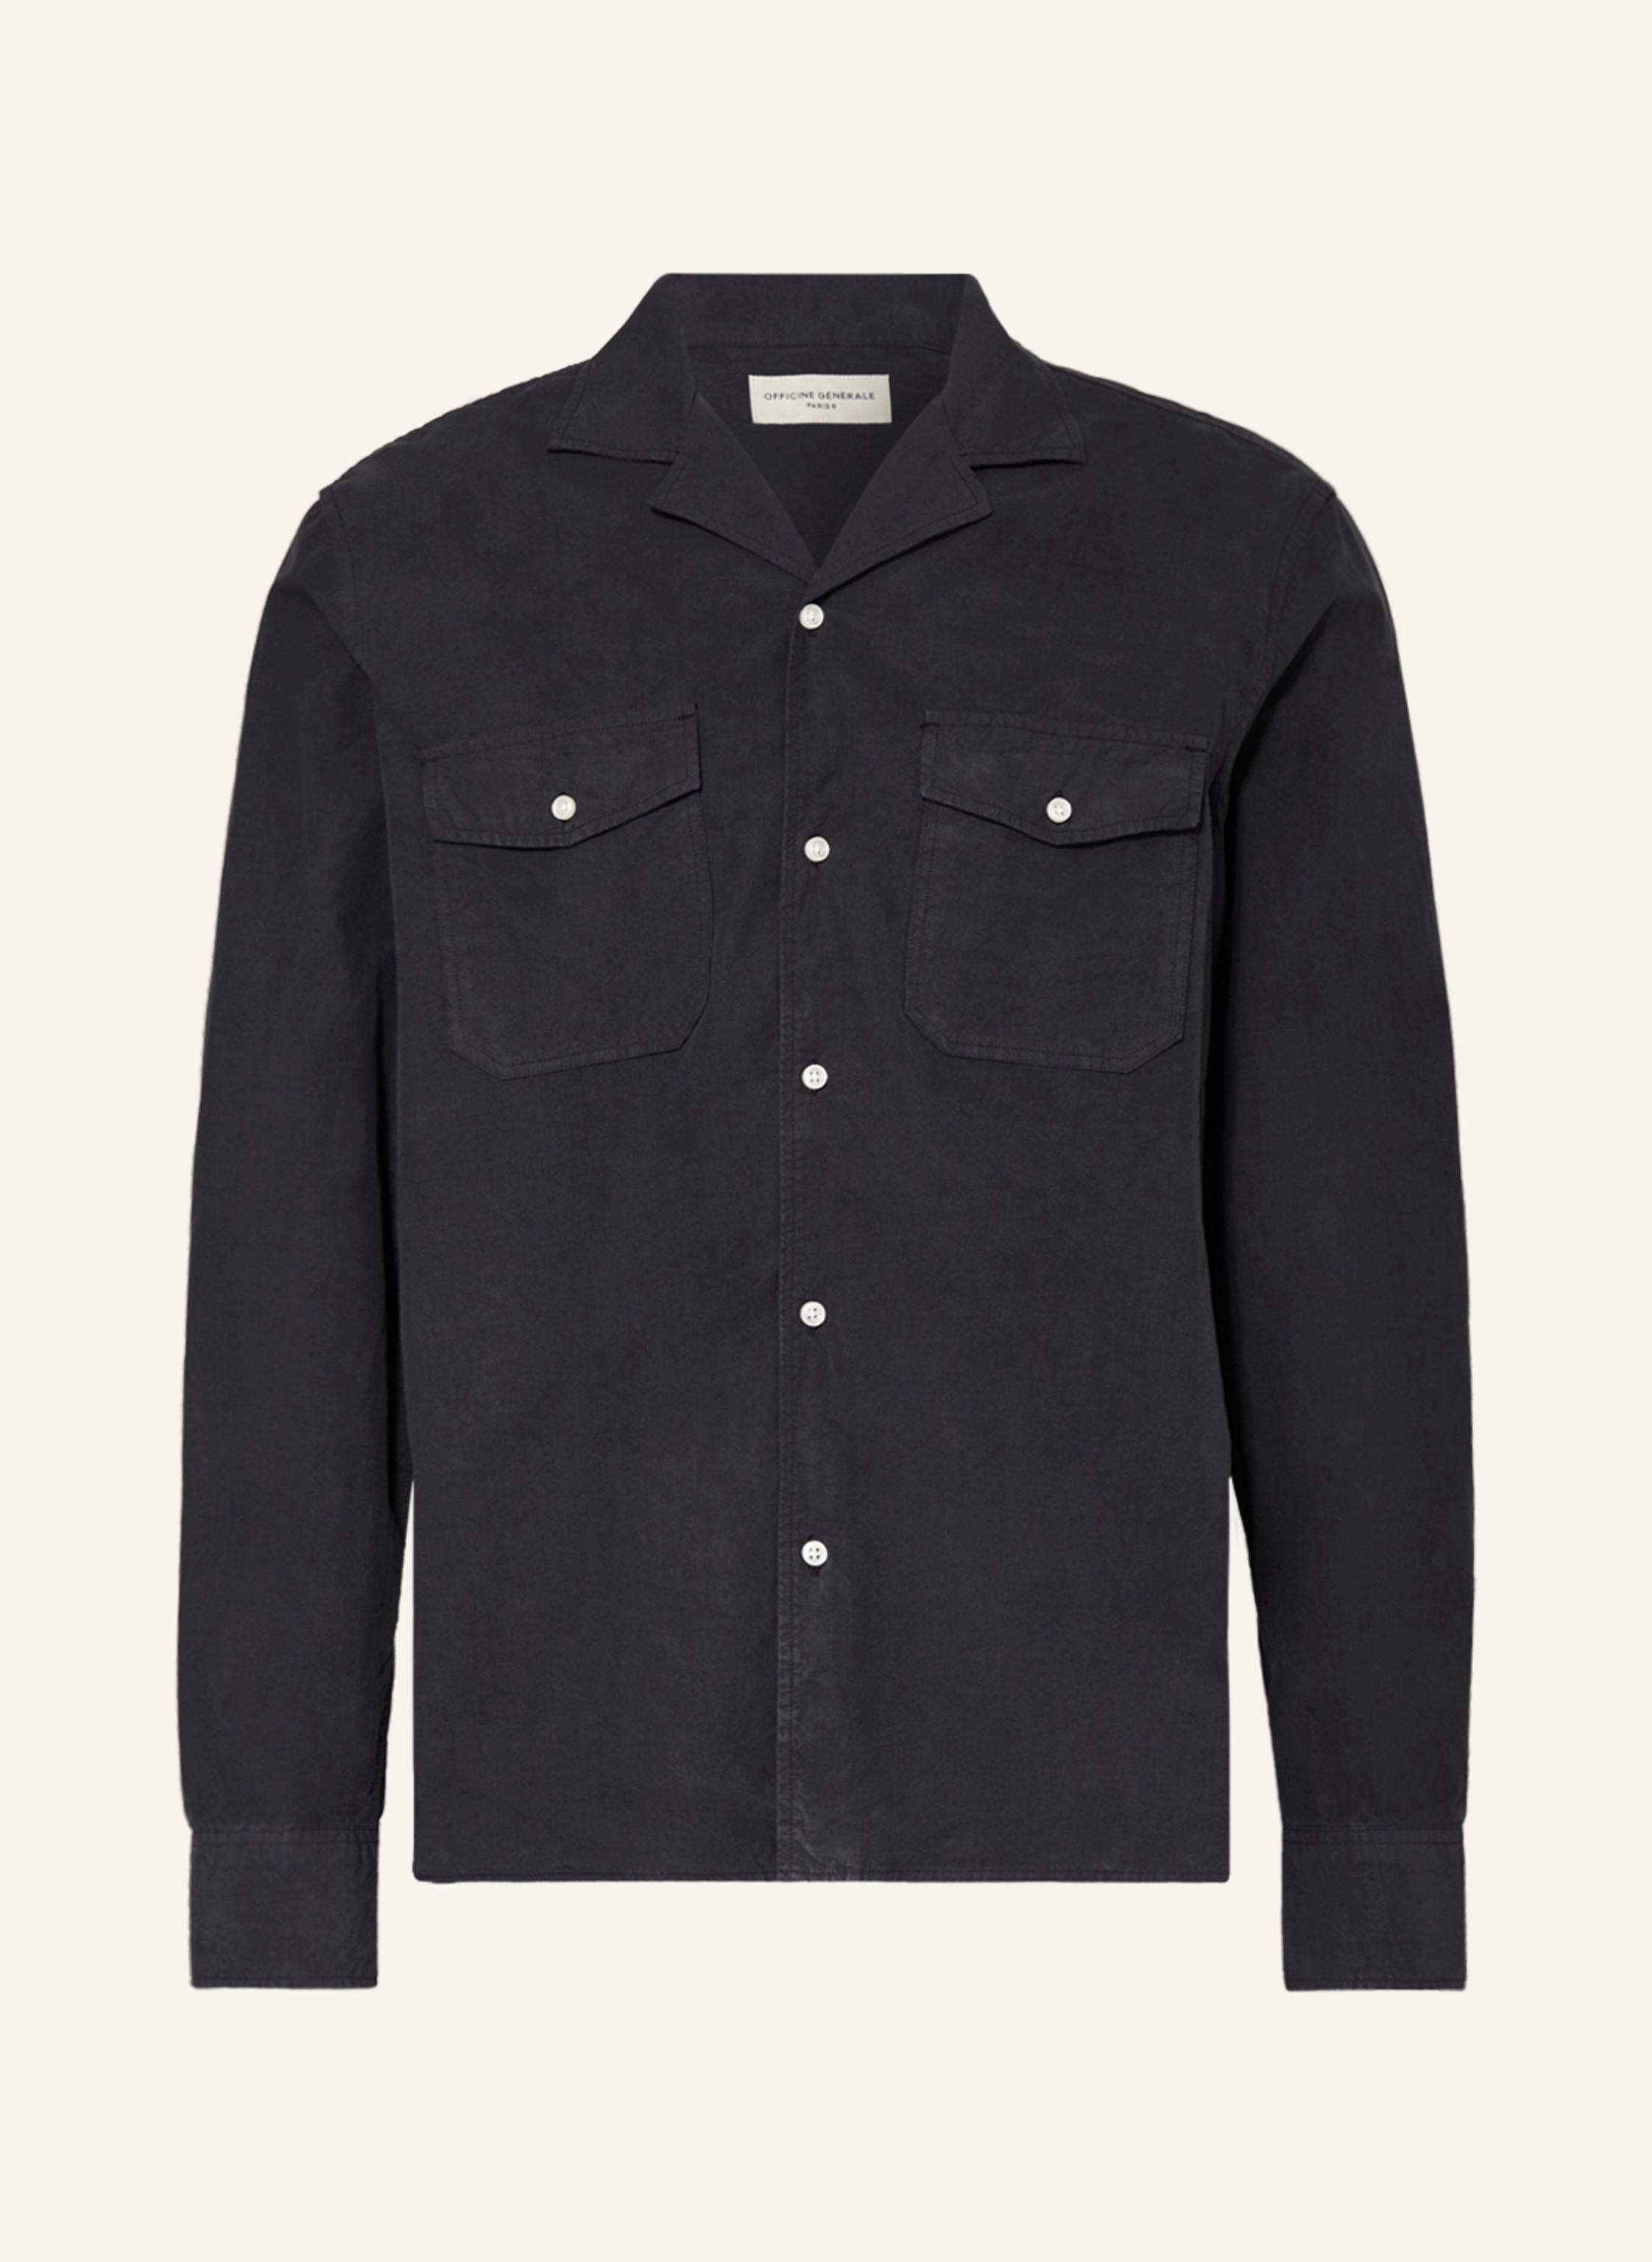 OFFICINE GÉNÉRALE Slim-Fit Cotton Oxford Shirt for Men